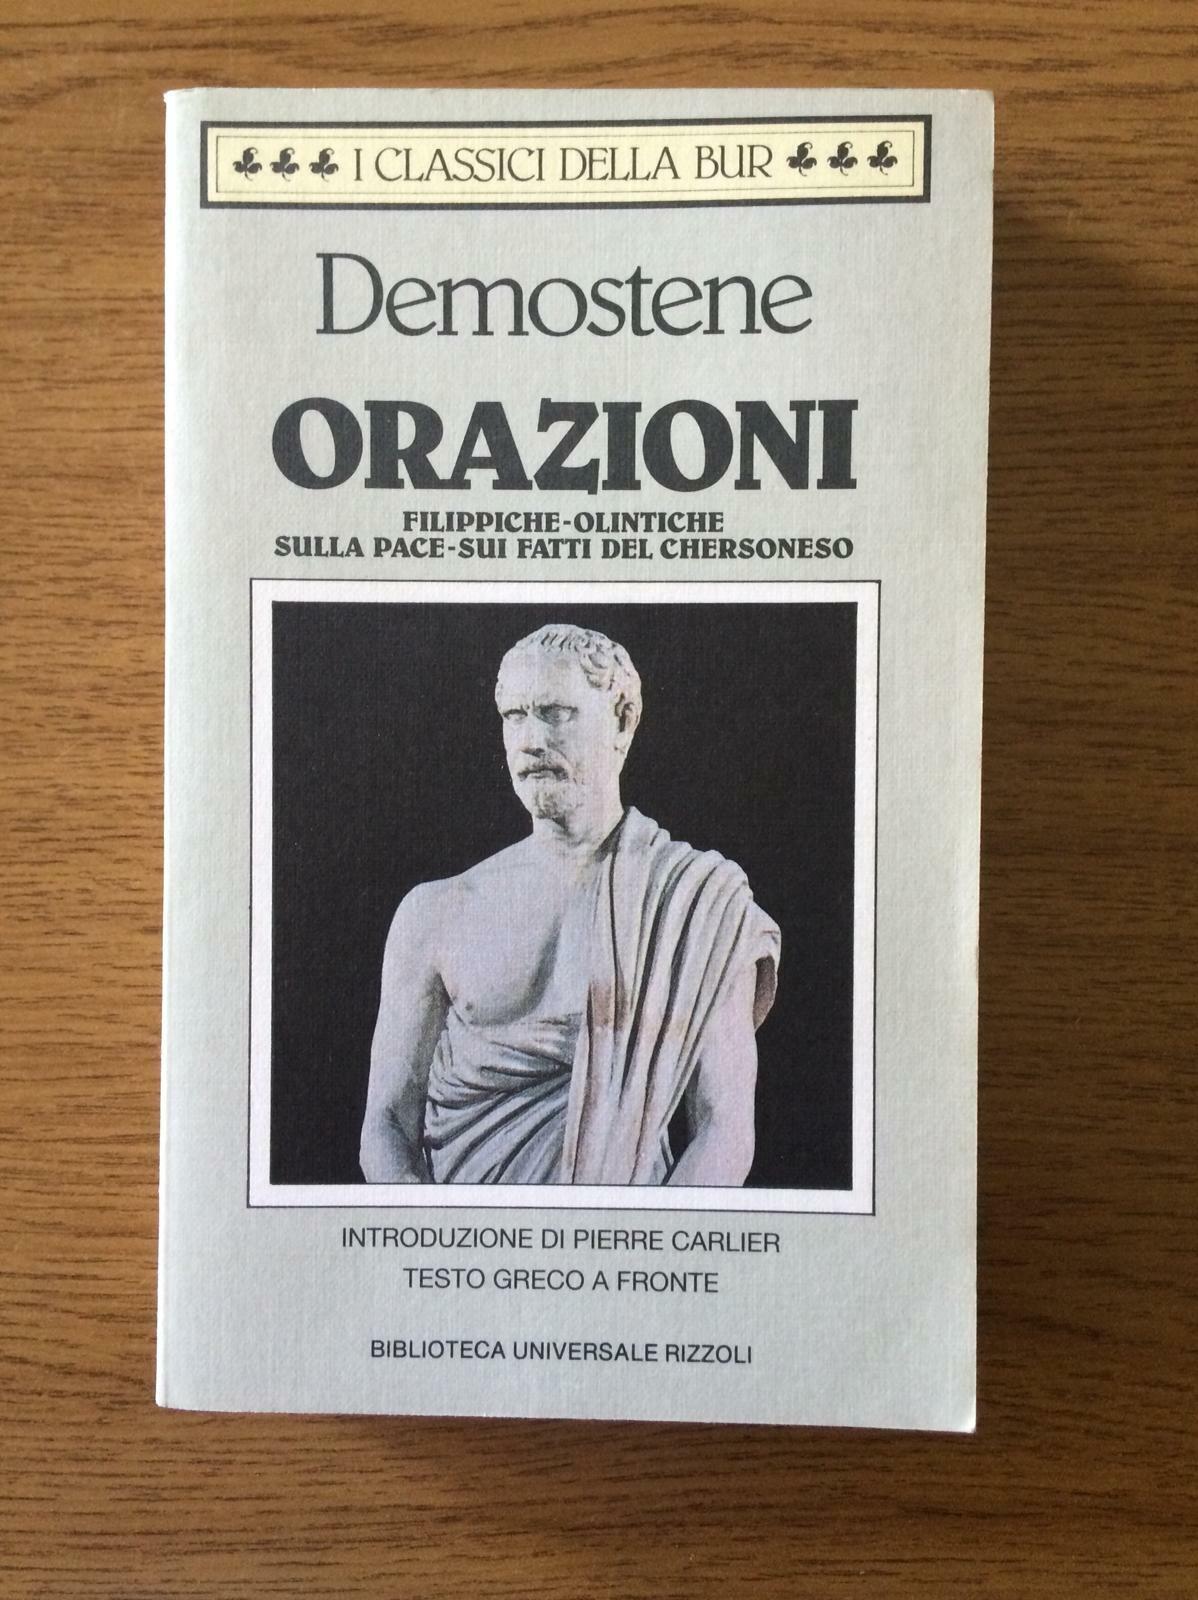 Orazioni - Demostene - Biblioteca Universale Rizzoli - 1992 - AR